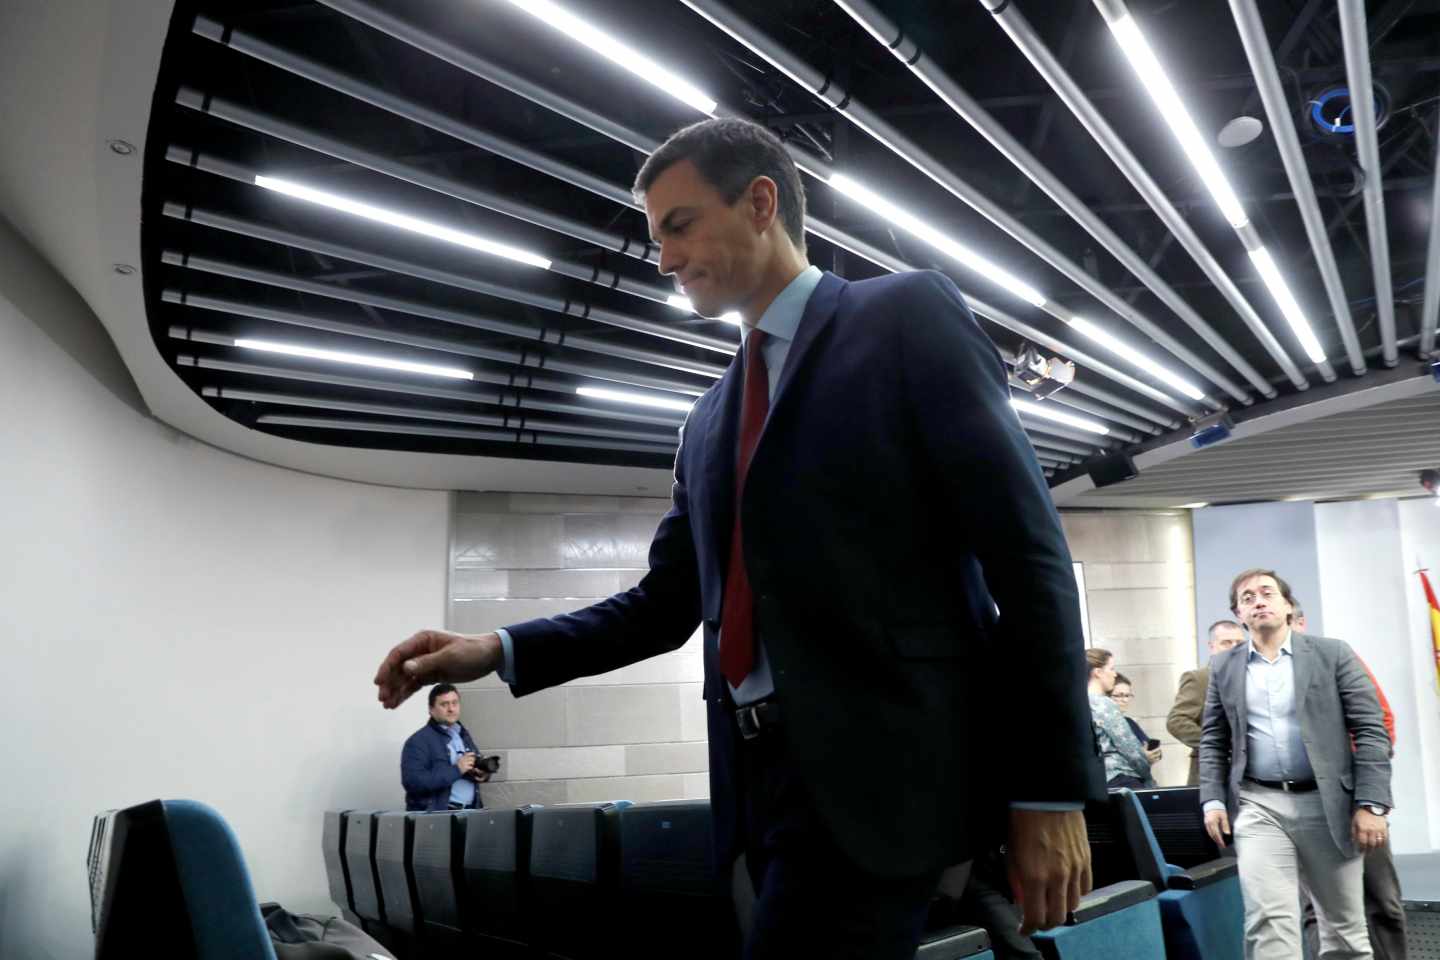 El presidente del Gobierno, Pedro Sánchez, tras comparecer hoy en el Palacio de la Moncloa, en Madrid, donde ha anunciado que España ha alcanzado un acuerdo sobre Gibraltar y, por tanto, mañana levantará el veto en la reunión de líderes comunitarios y votará a favor del "brexit".